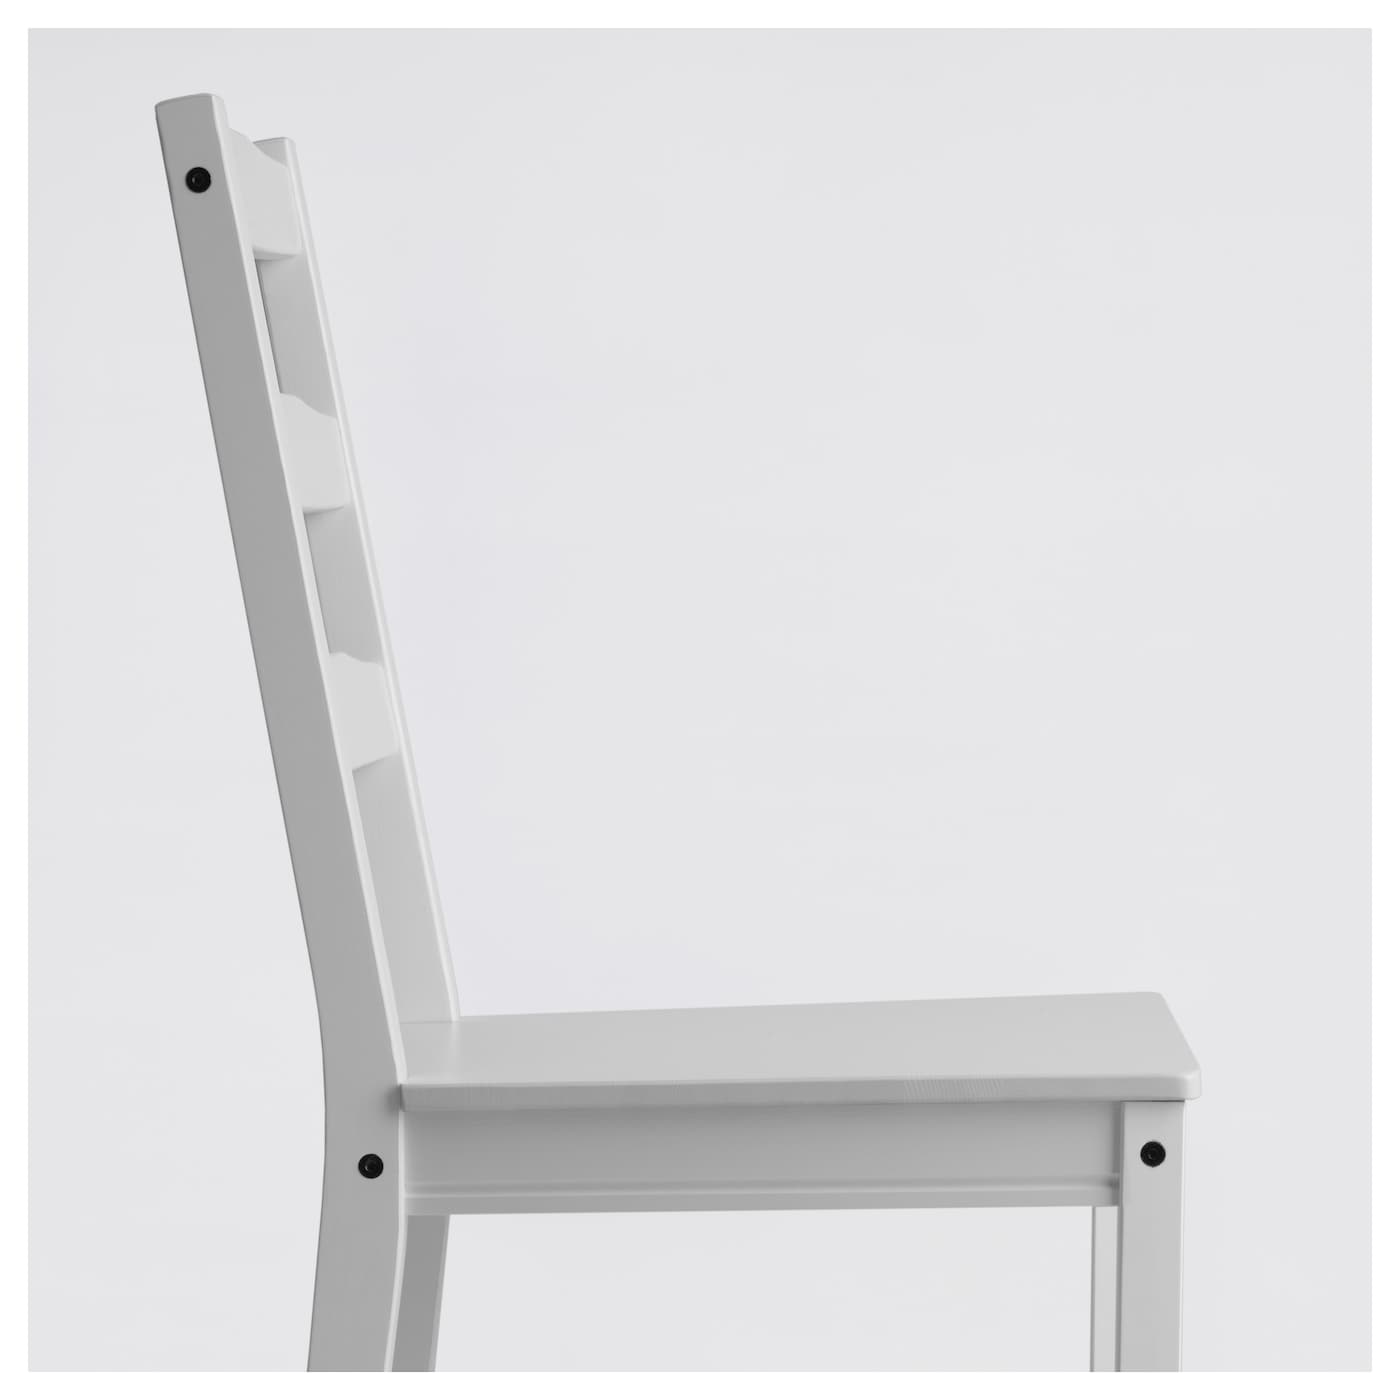 JOKKMOKK 约克马克椅子白色- IKEA